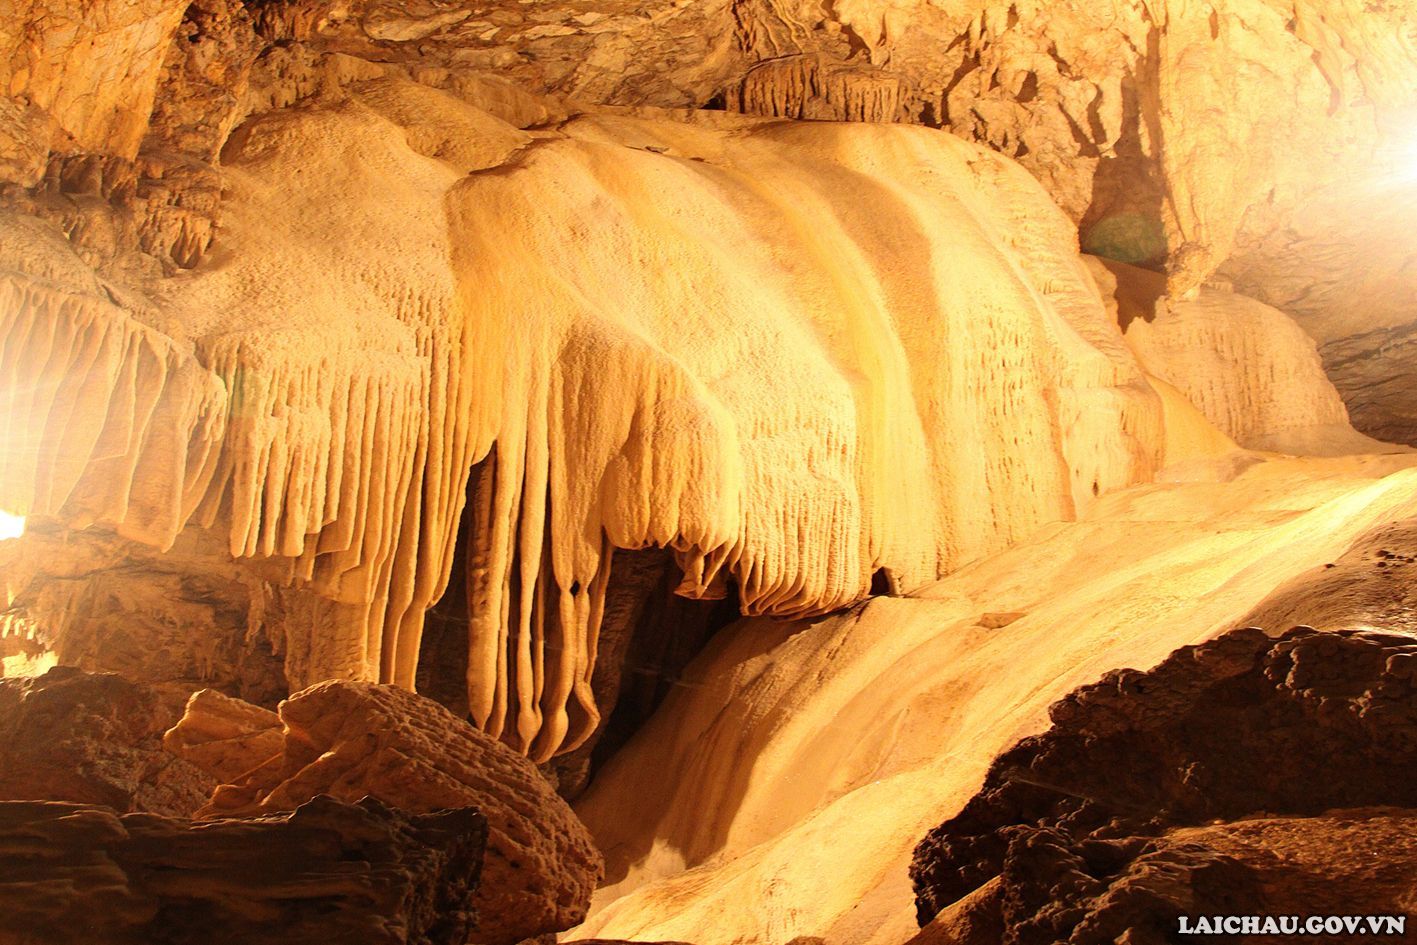 Hệ thống hang động Gia Khâu ở Lai Châu